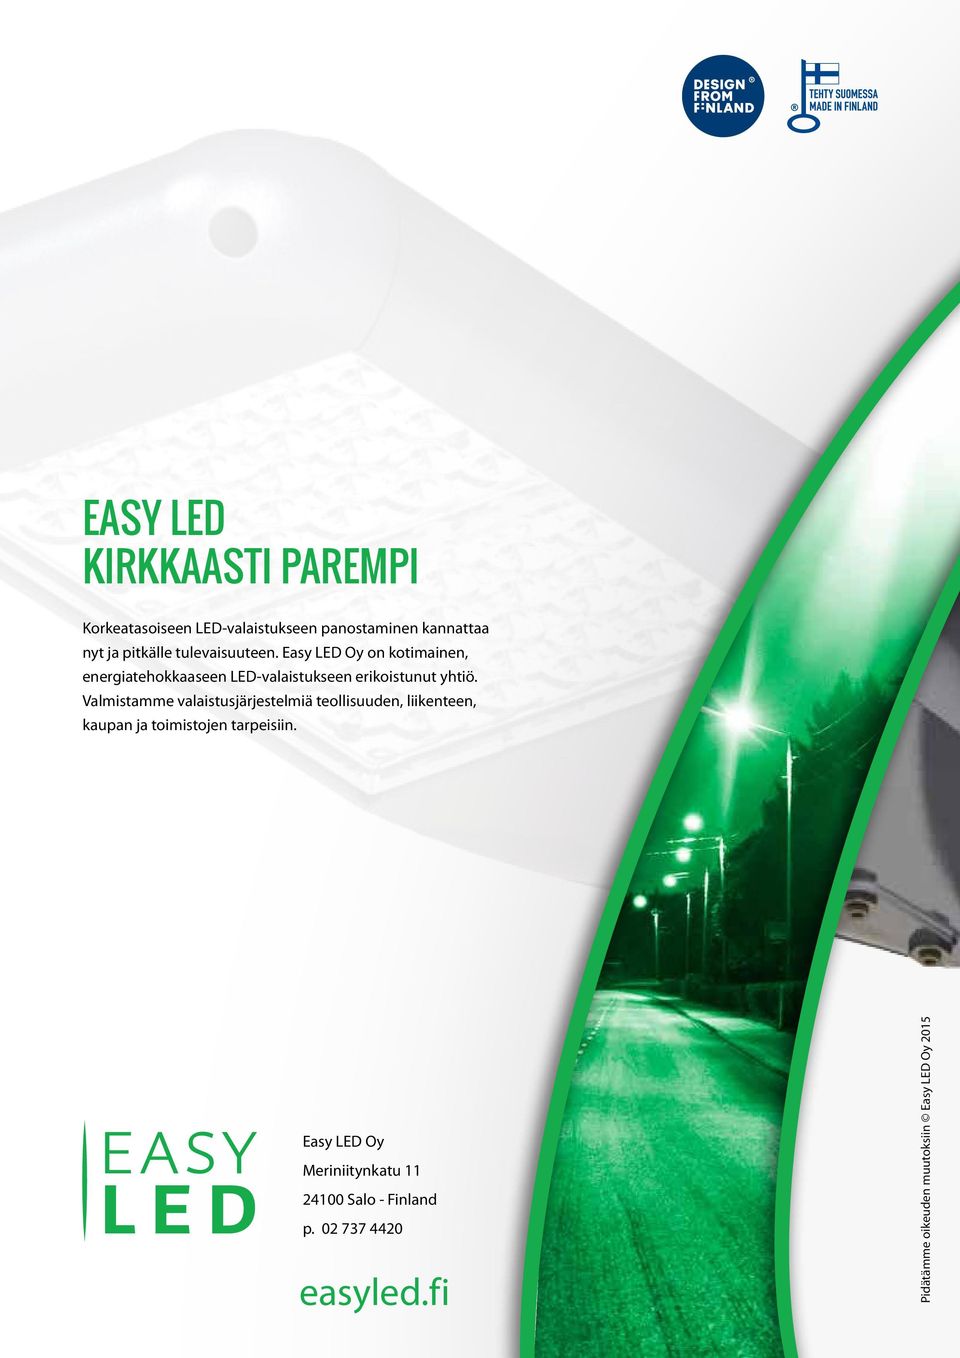 Easy LED Oy on kotimainen, energiatehokkaaseen LED-valaistukseen erikoistunut yhtiö.